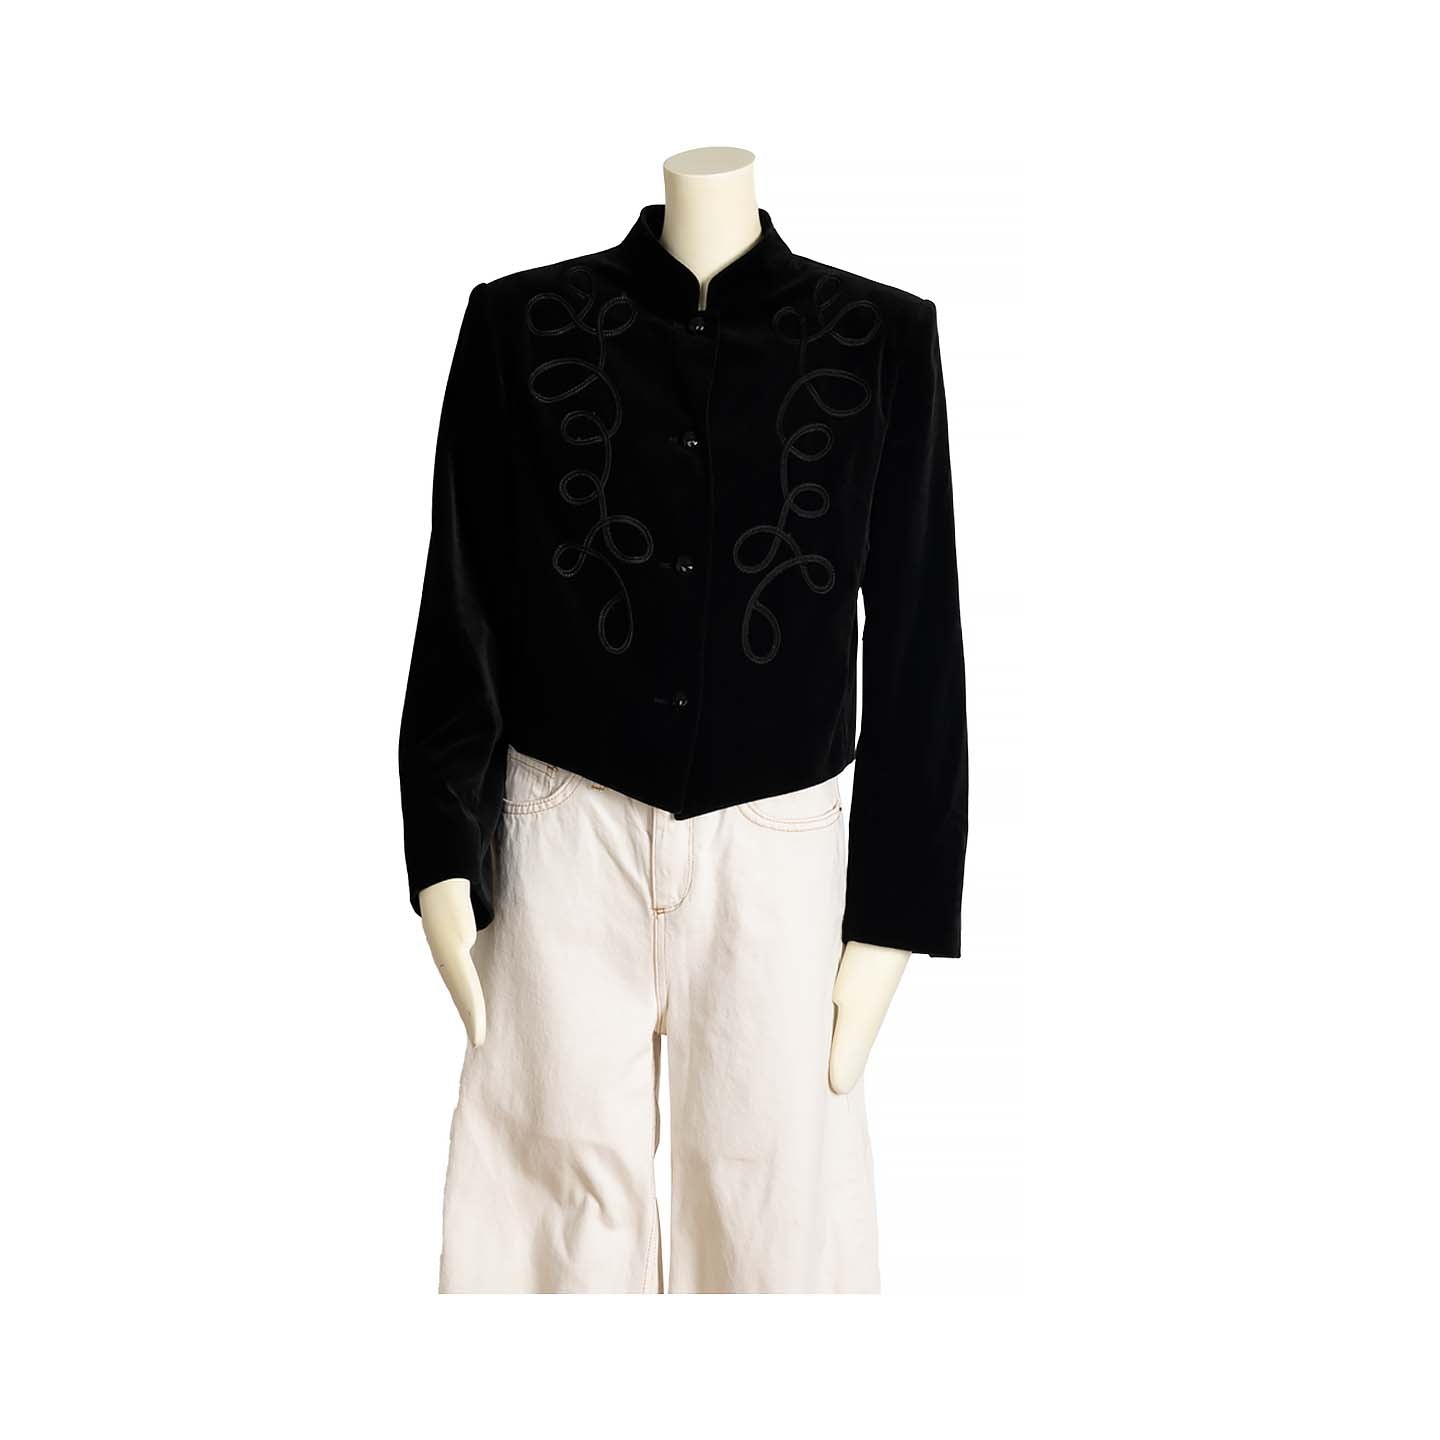 Guy Laroche velvet black Spencer jacket - M - 1980s